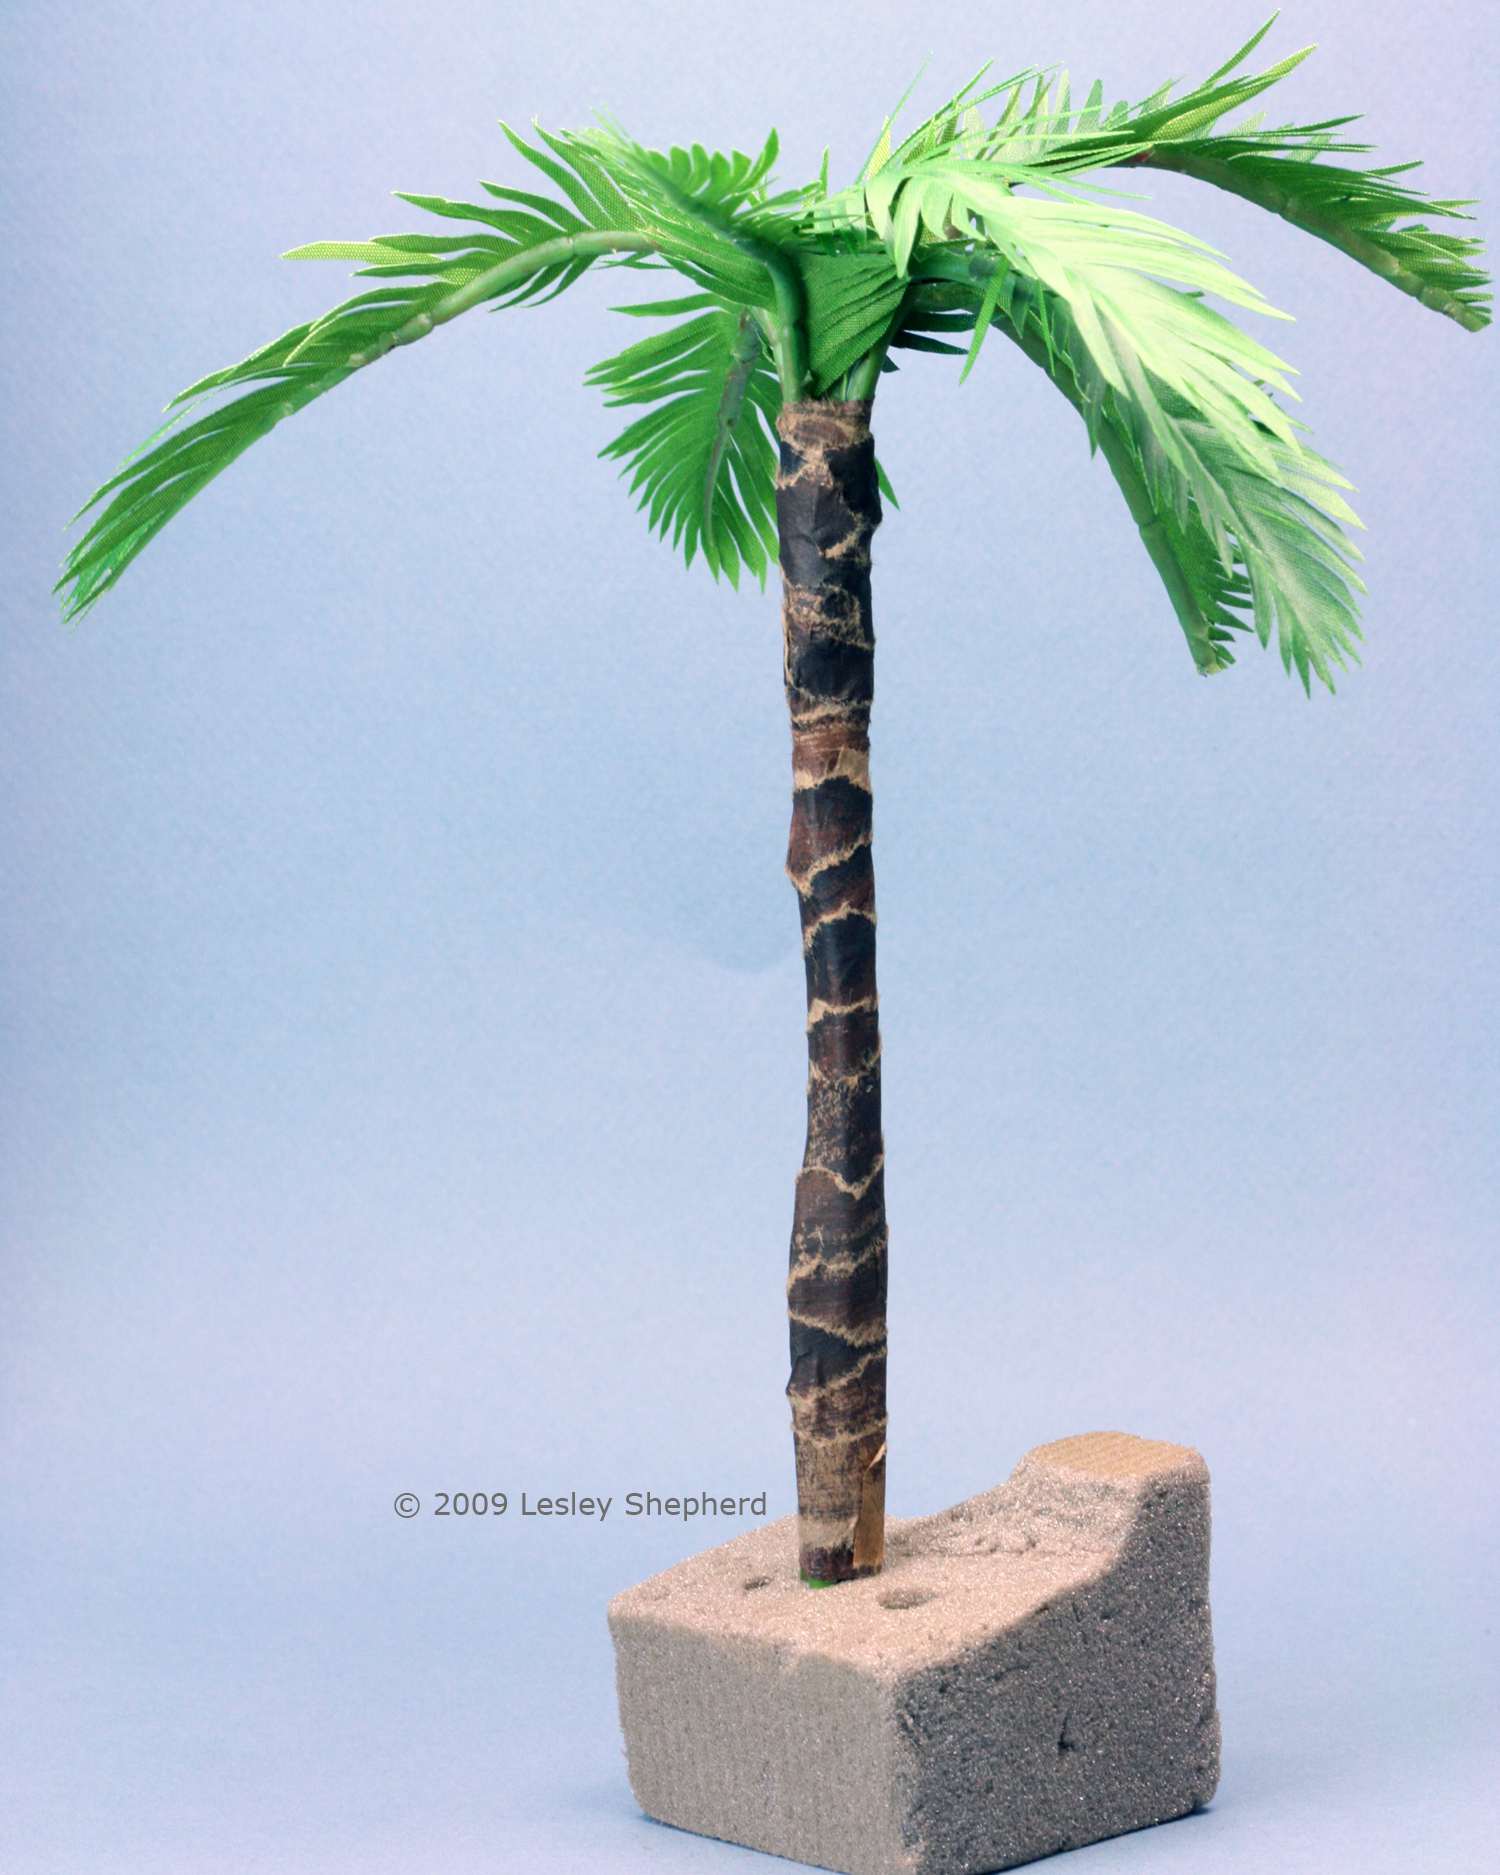 比例模型棕榈树织物制成的树叶和纸